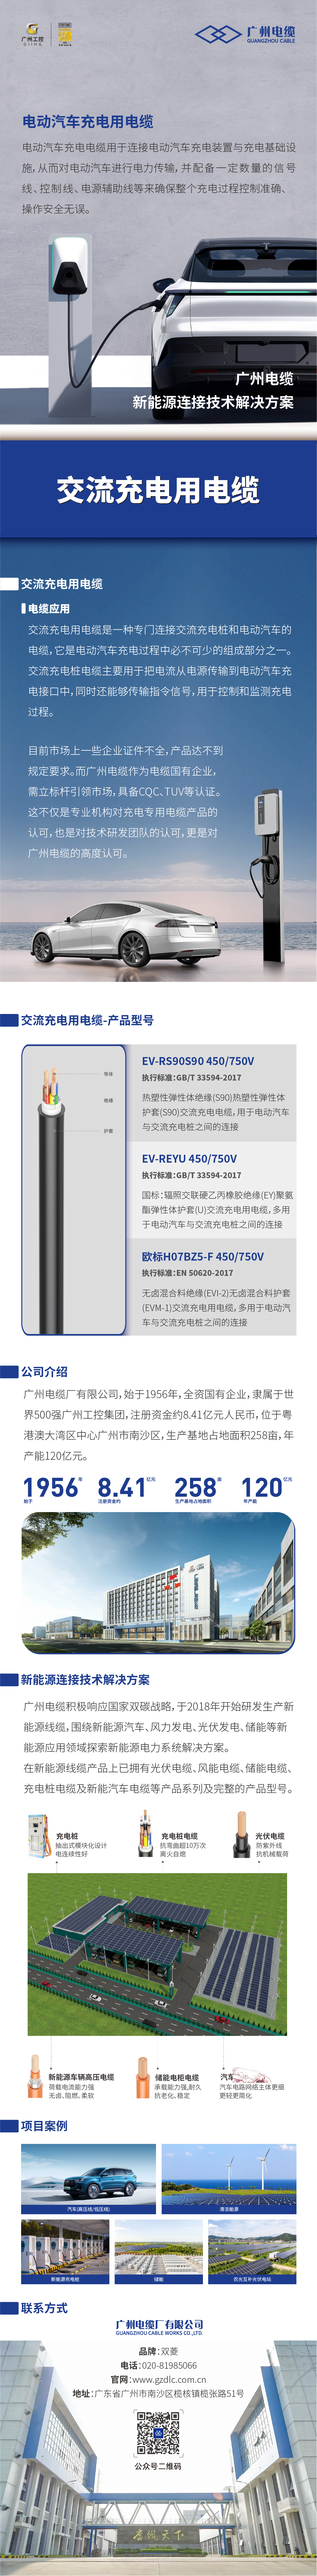 广州电缆-交流充电用电缆.jpg